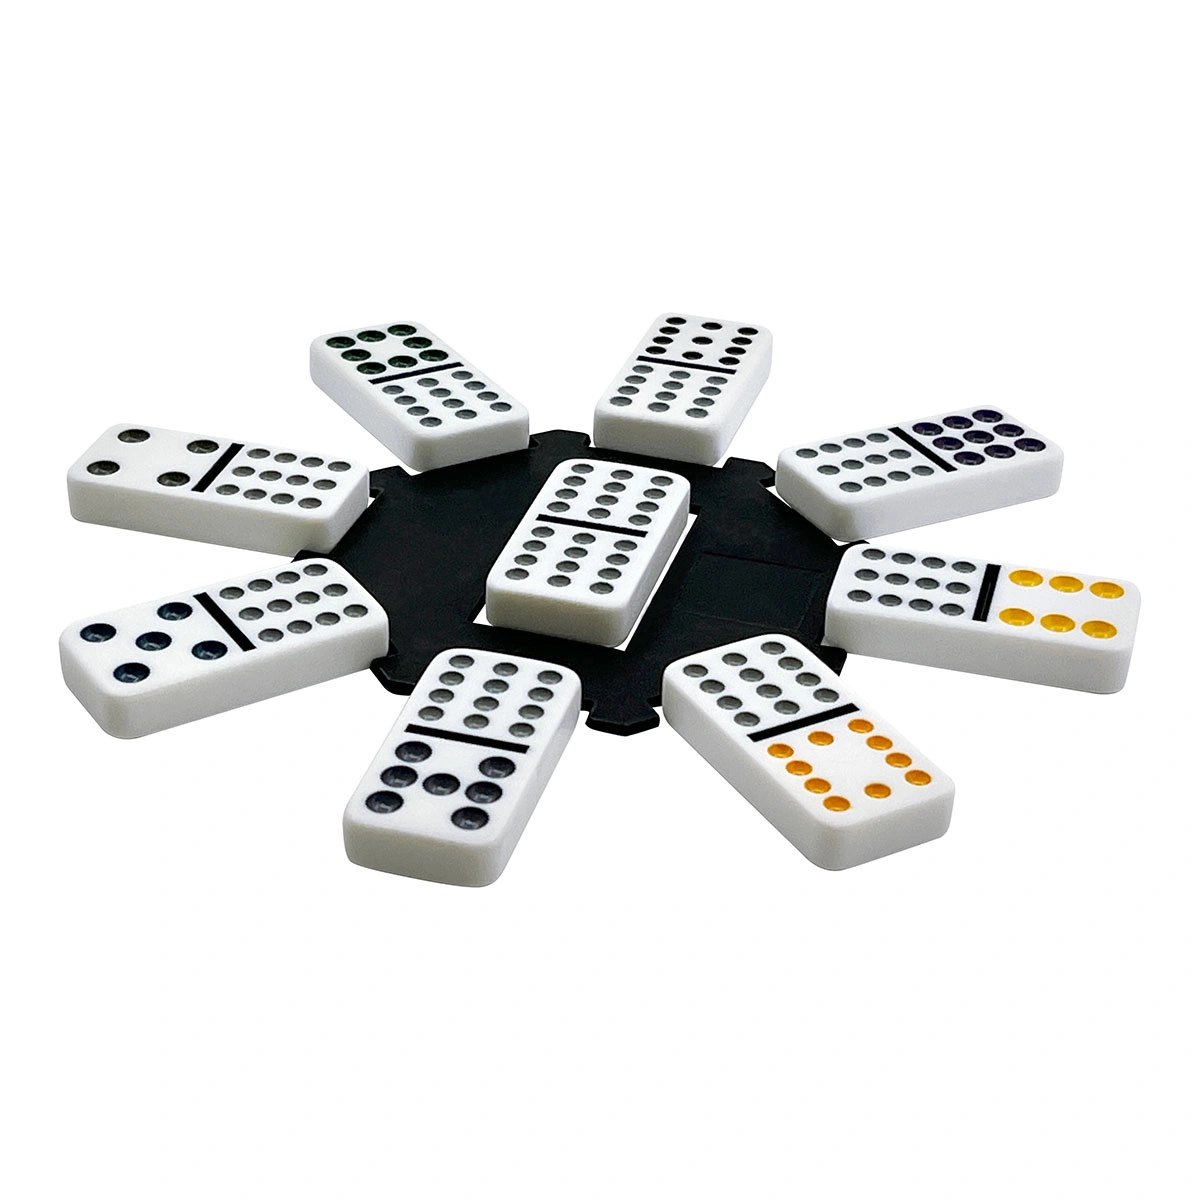 Domino Set in Aluminum Case